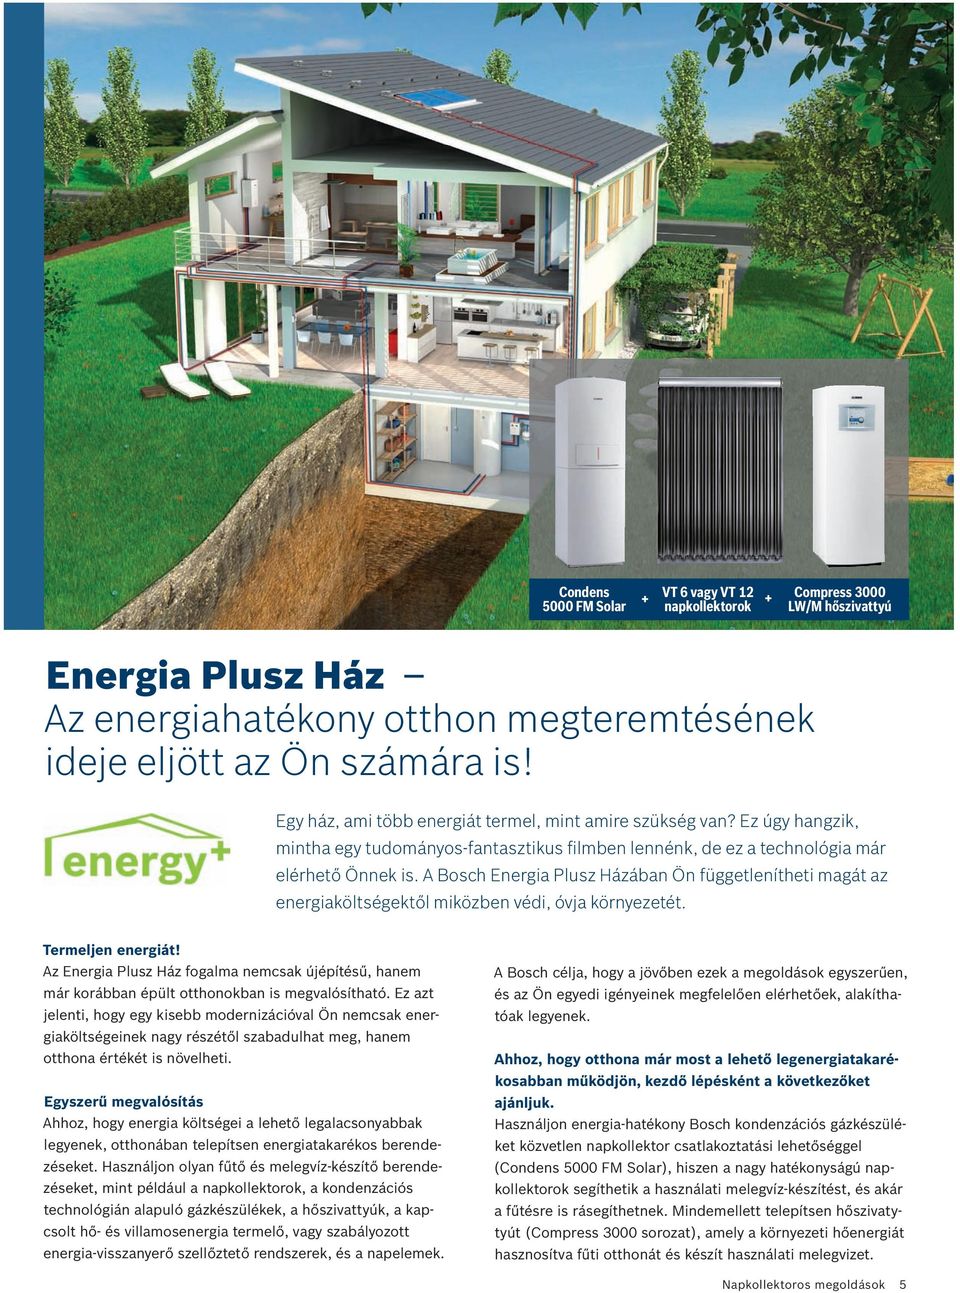 A Bosch Energia Plusz Házában Ön függetlenítheti magát az energiaköltségektől miközben védi, óvja környezetét. Termeljen energiát!